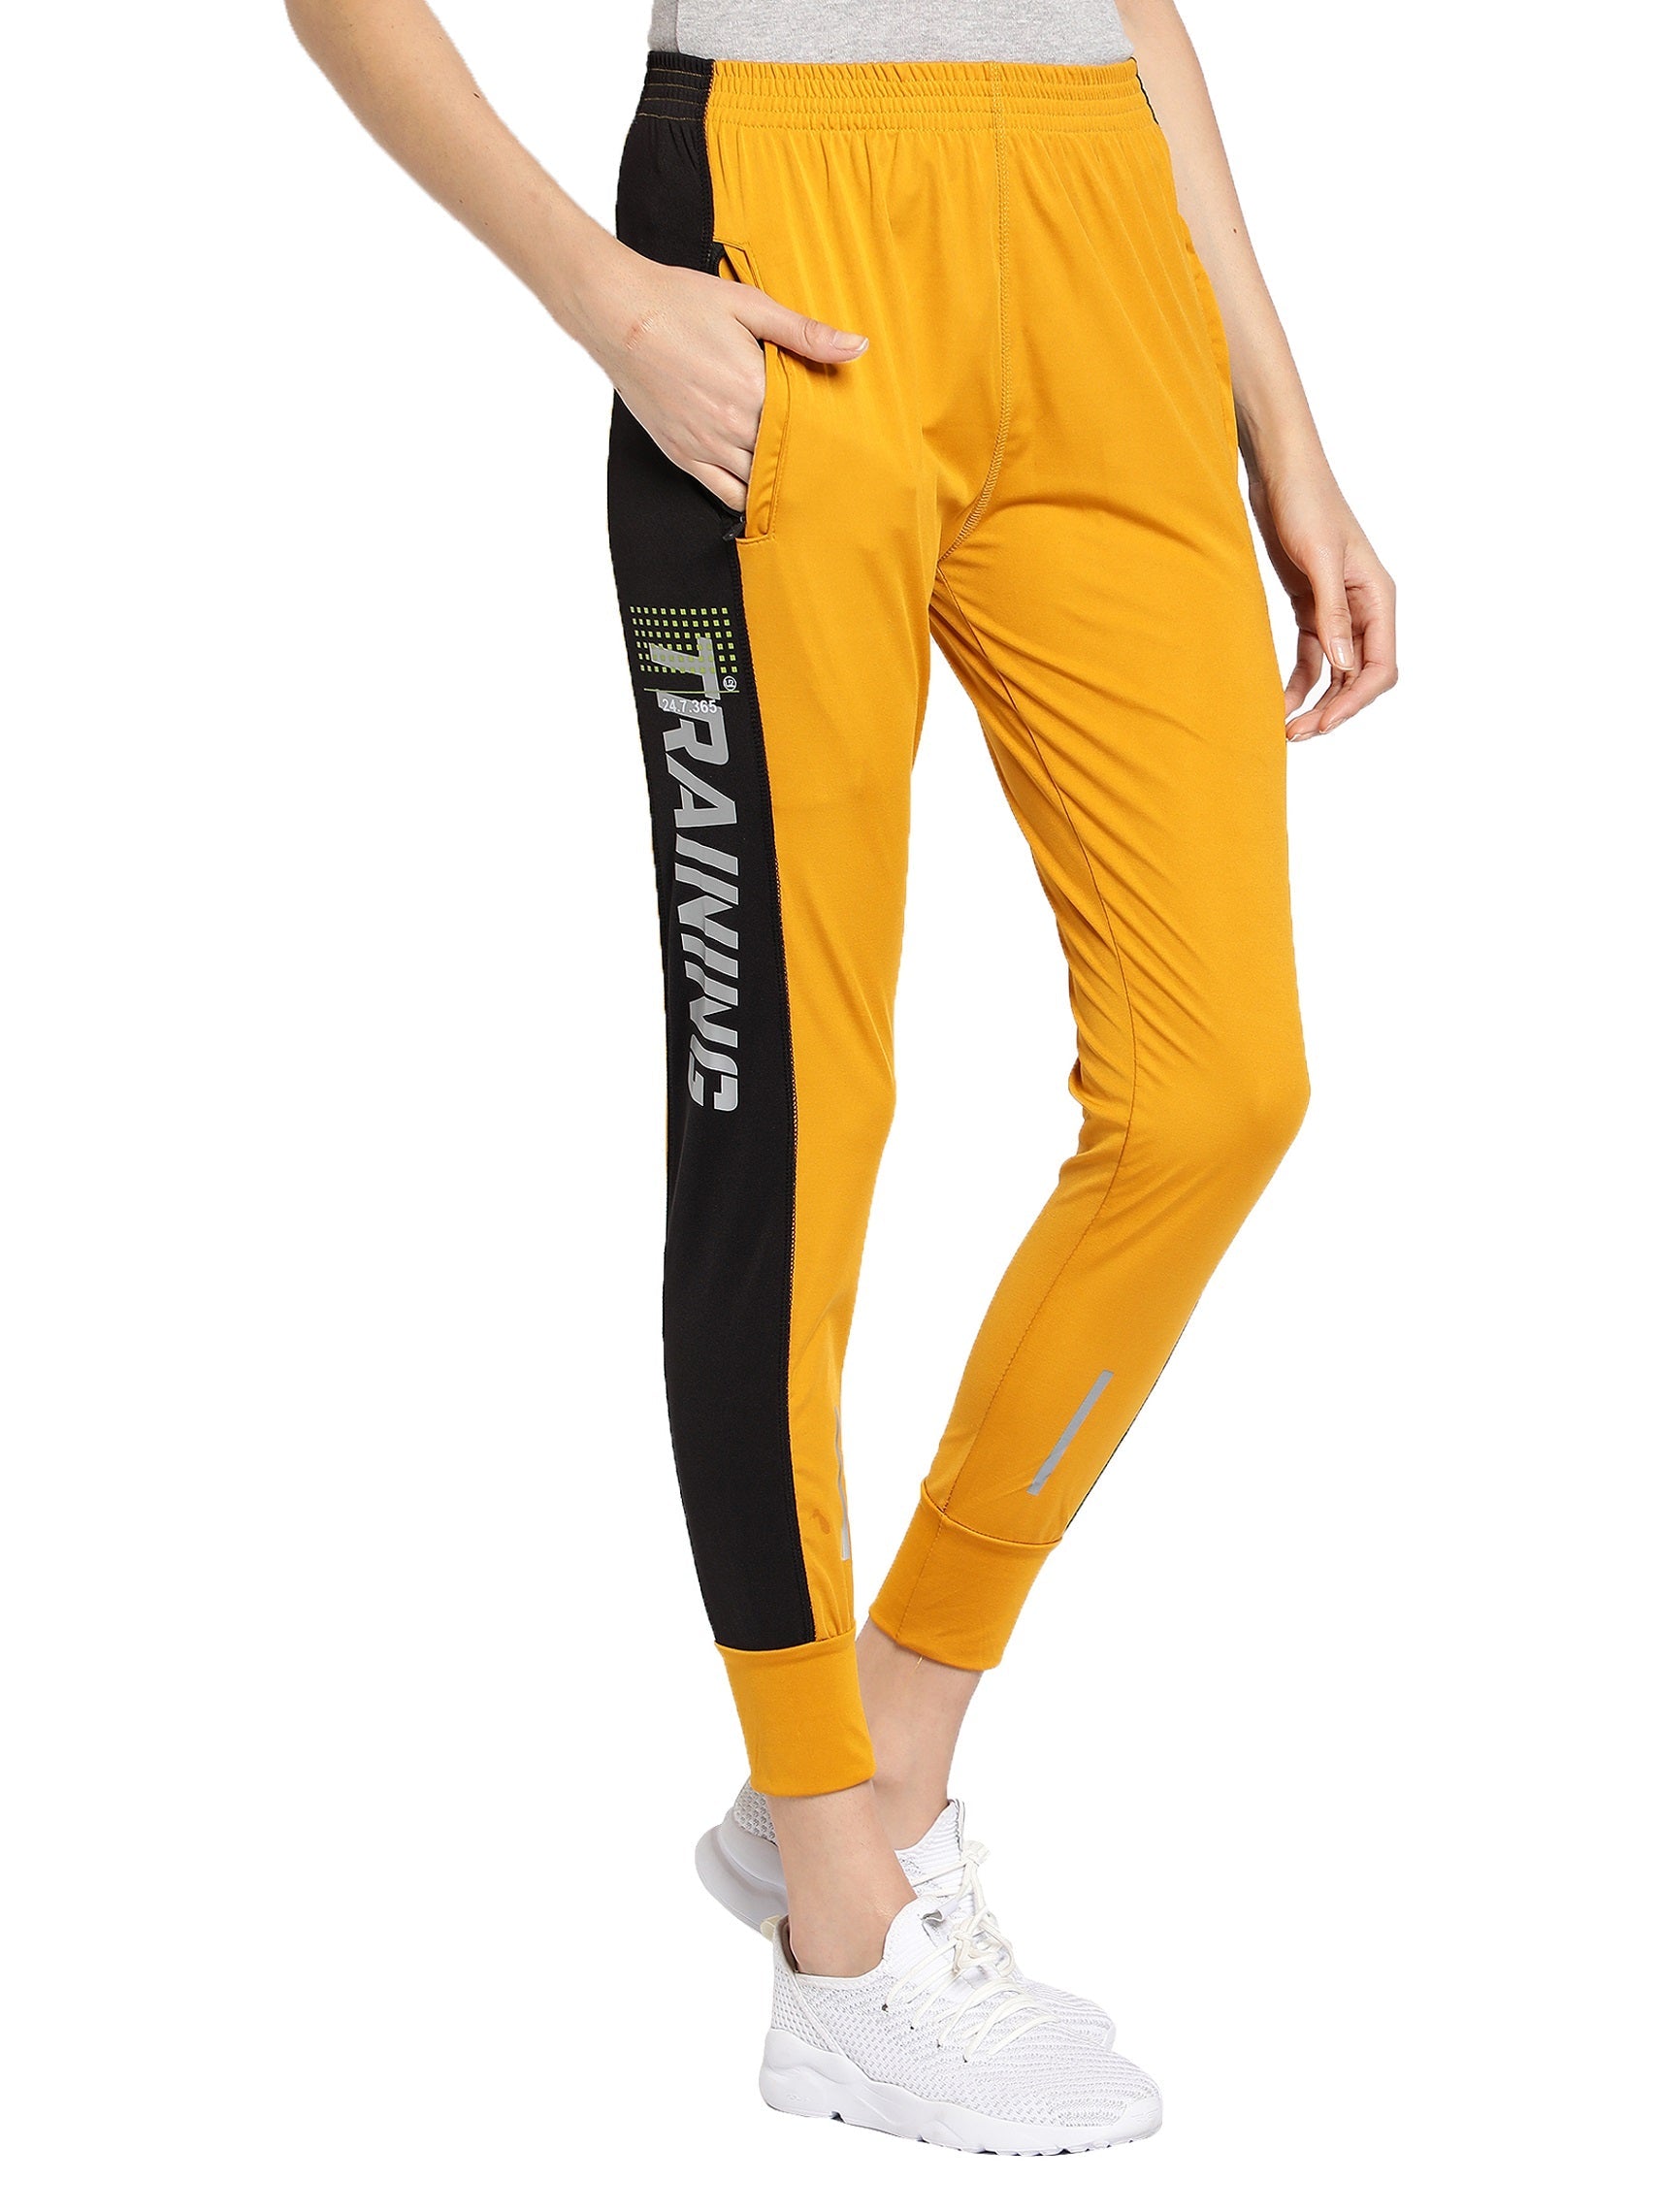 Nike Women's Green White Stripe Cropped Capri Track Pants Size L